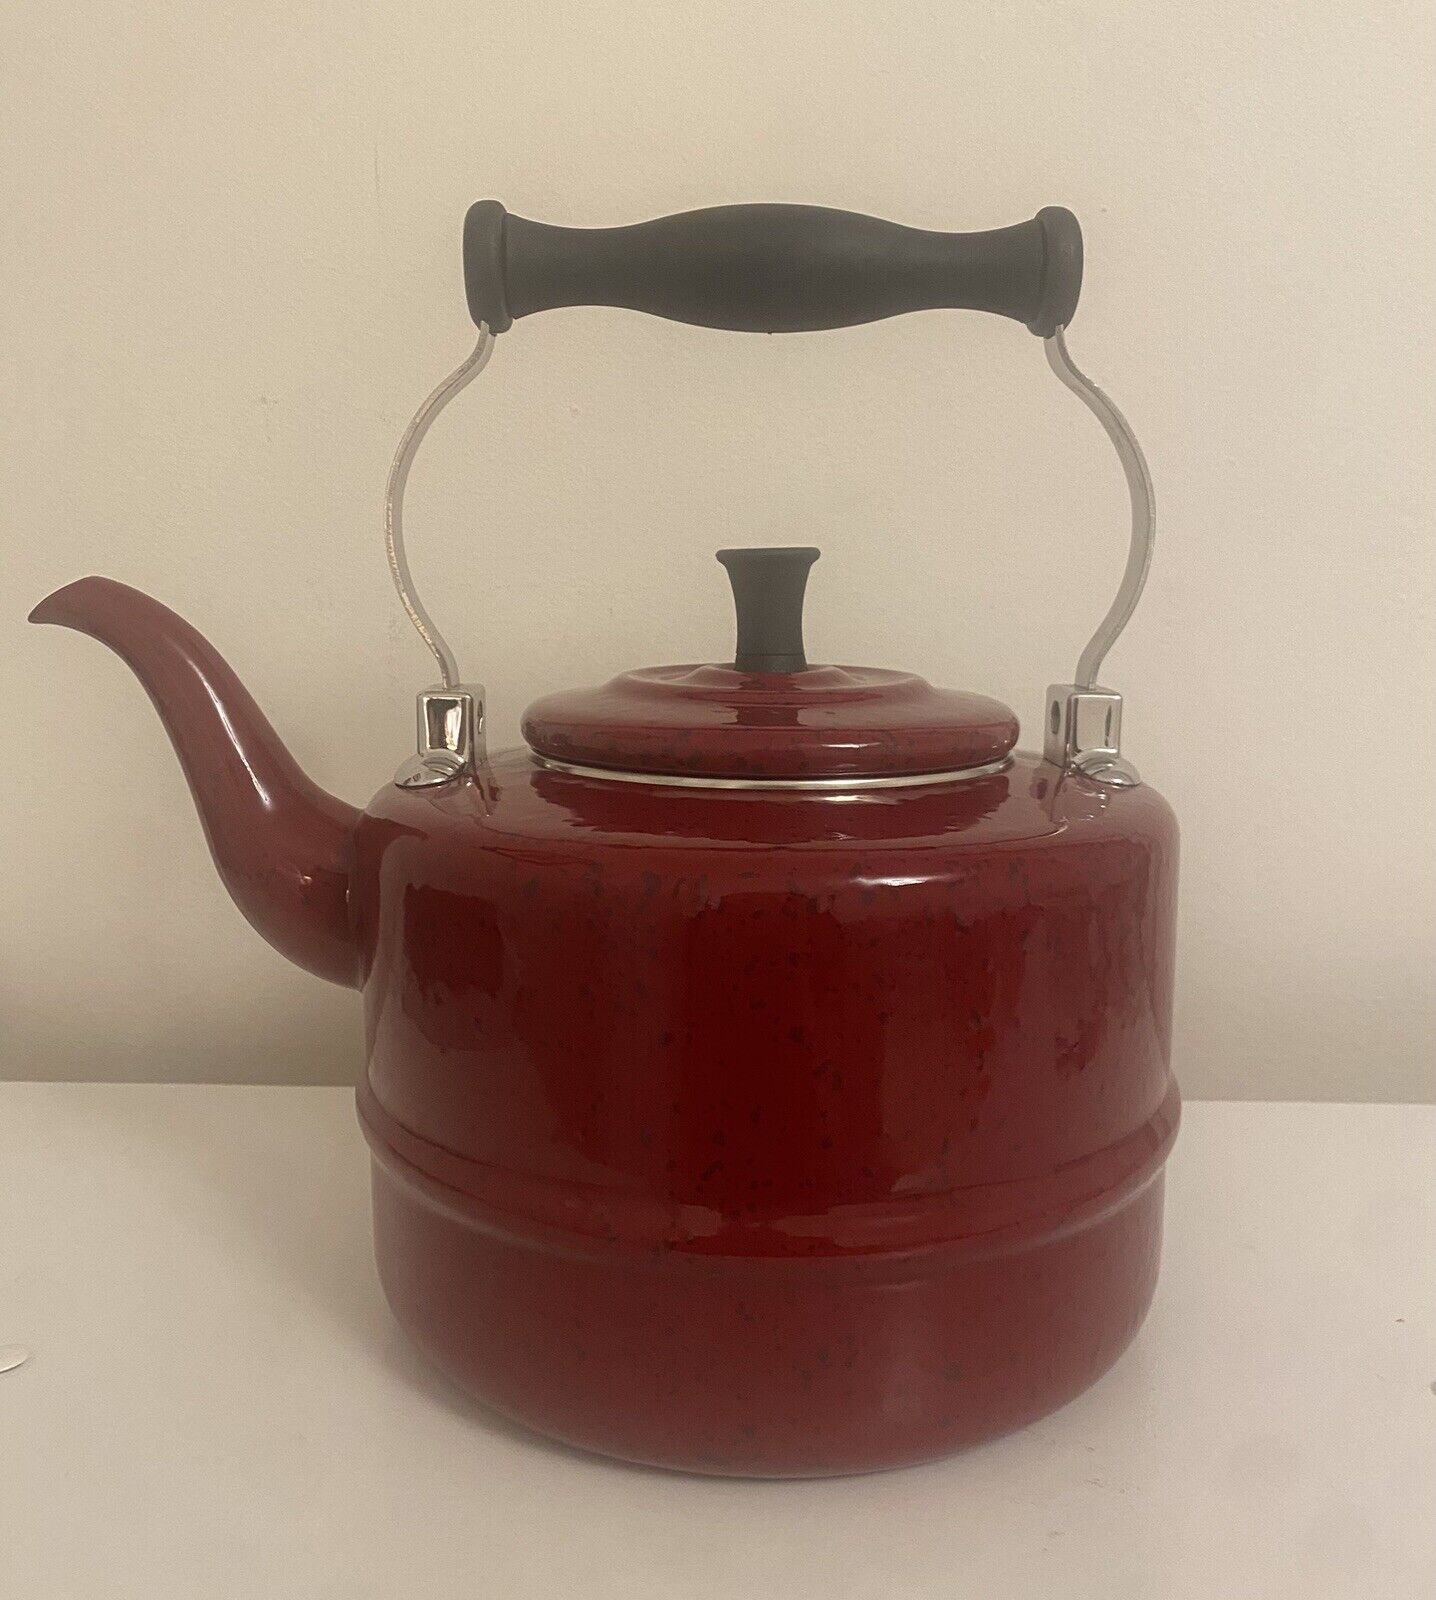 Paula Deen Collection Red Speckled Tea Kettle Pot Steel w/Enamel Finish NEW